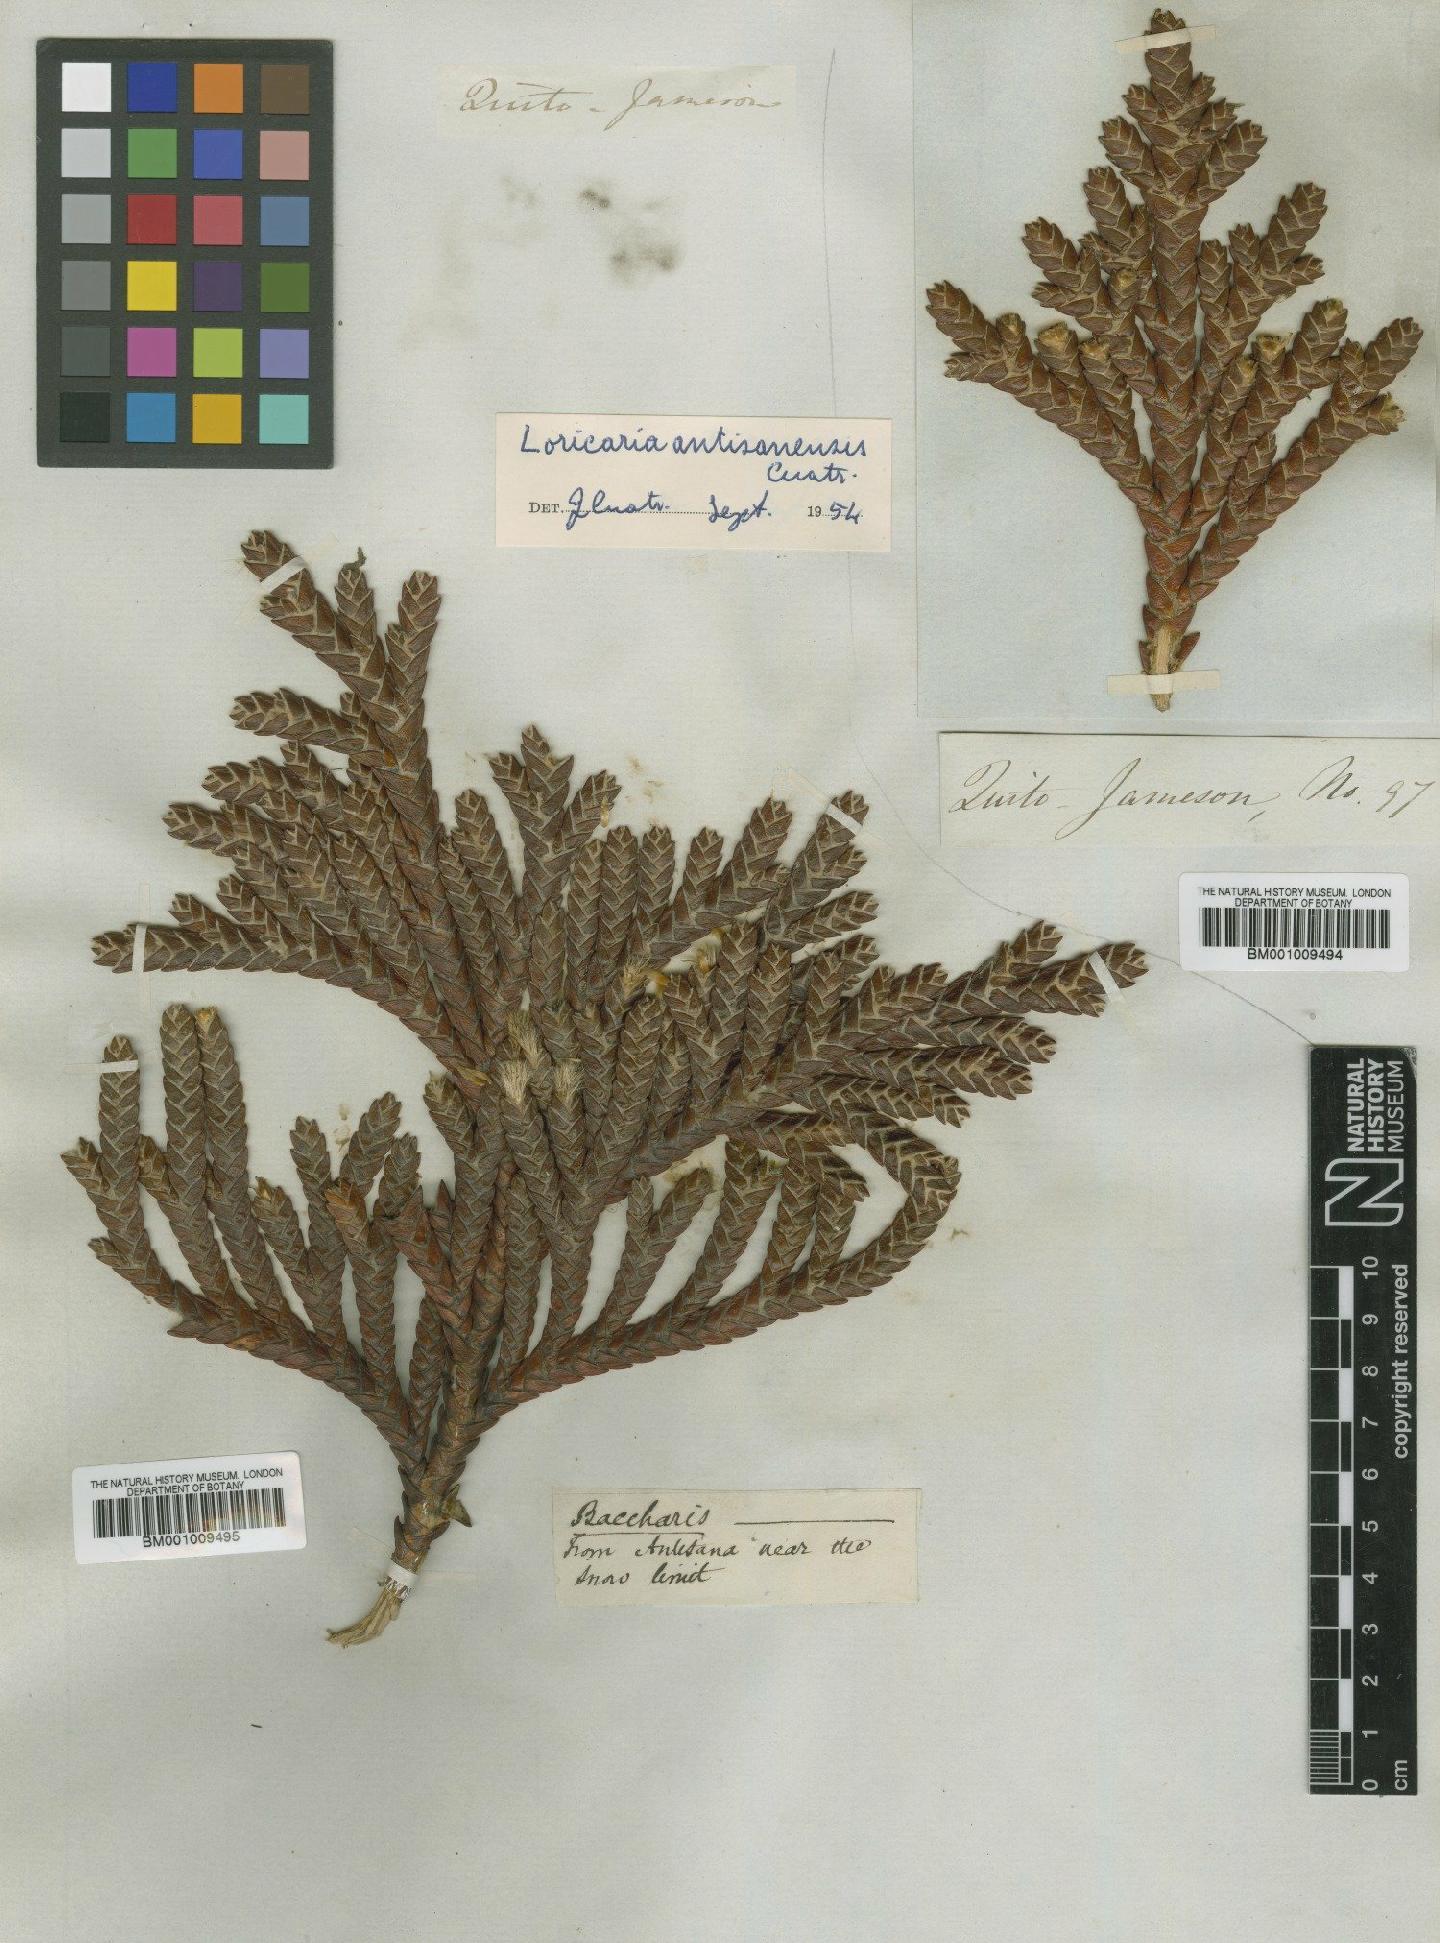 To NHMUK collection (Loricaria antisanensis Cuatrec.; TYPE; NHMUK:ecatalogue:611384)